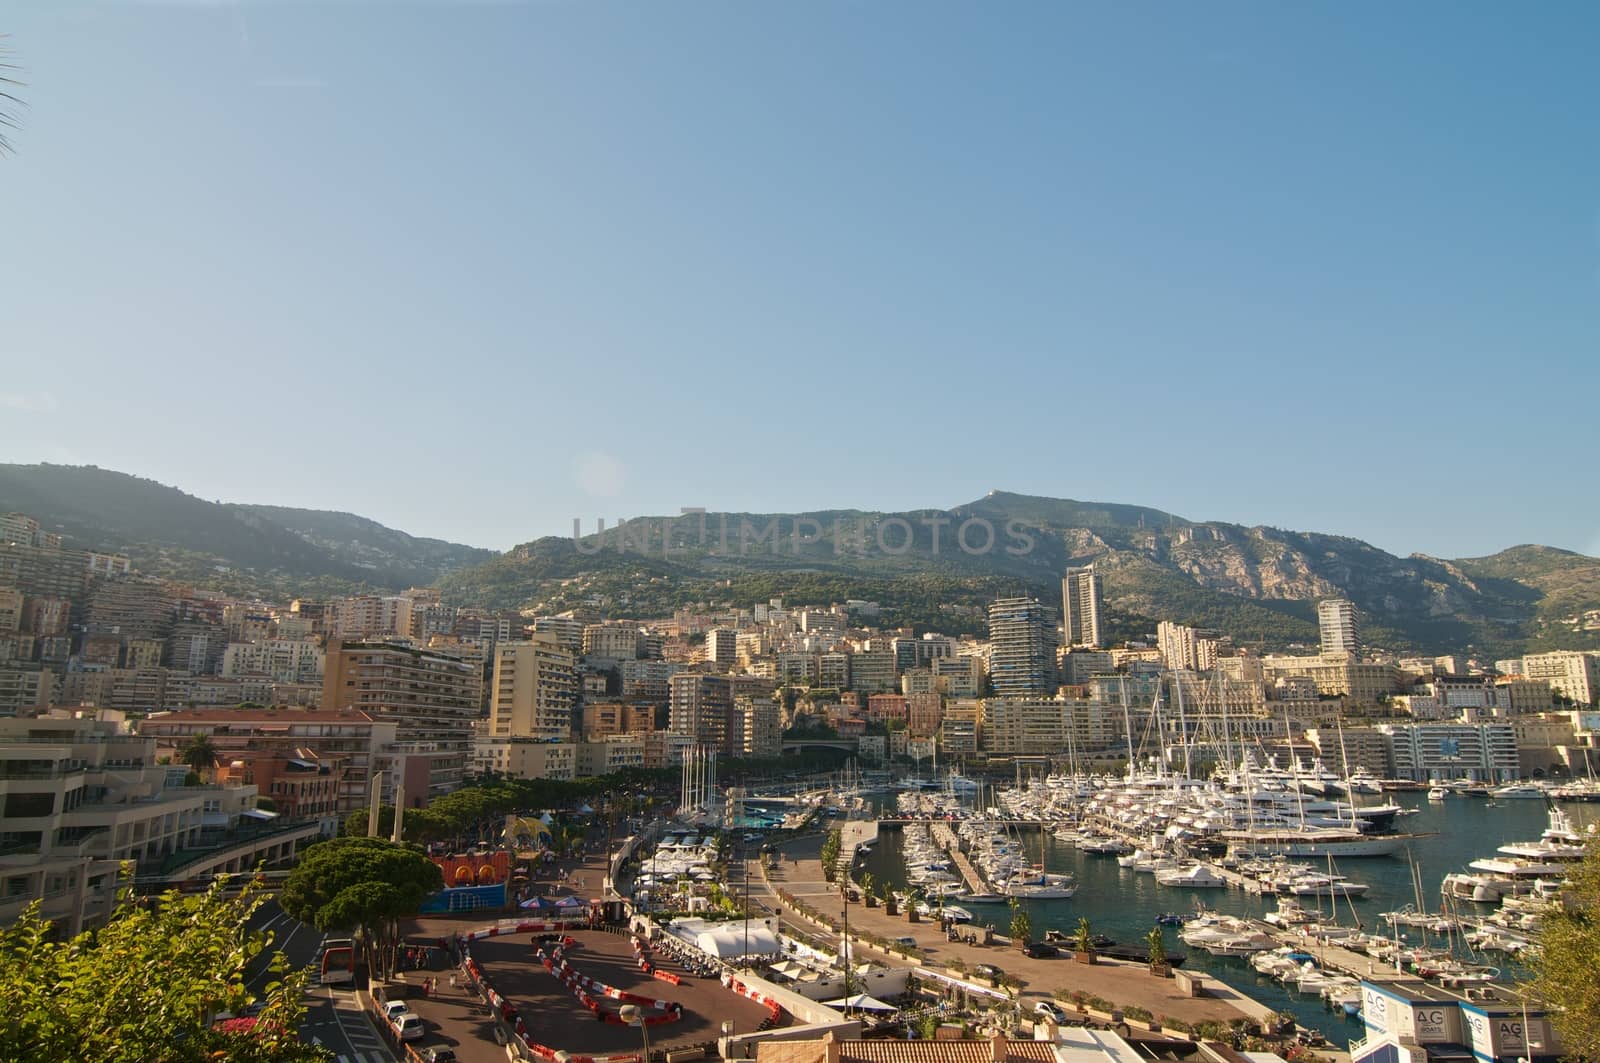 The picture of the quay Monaco